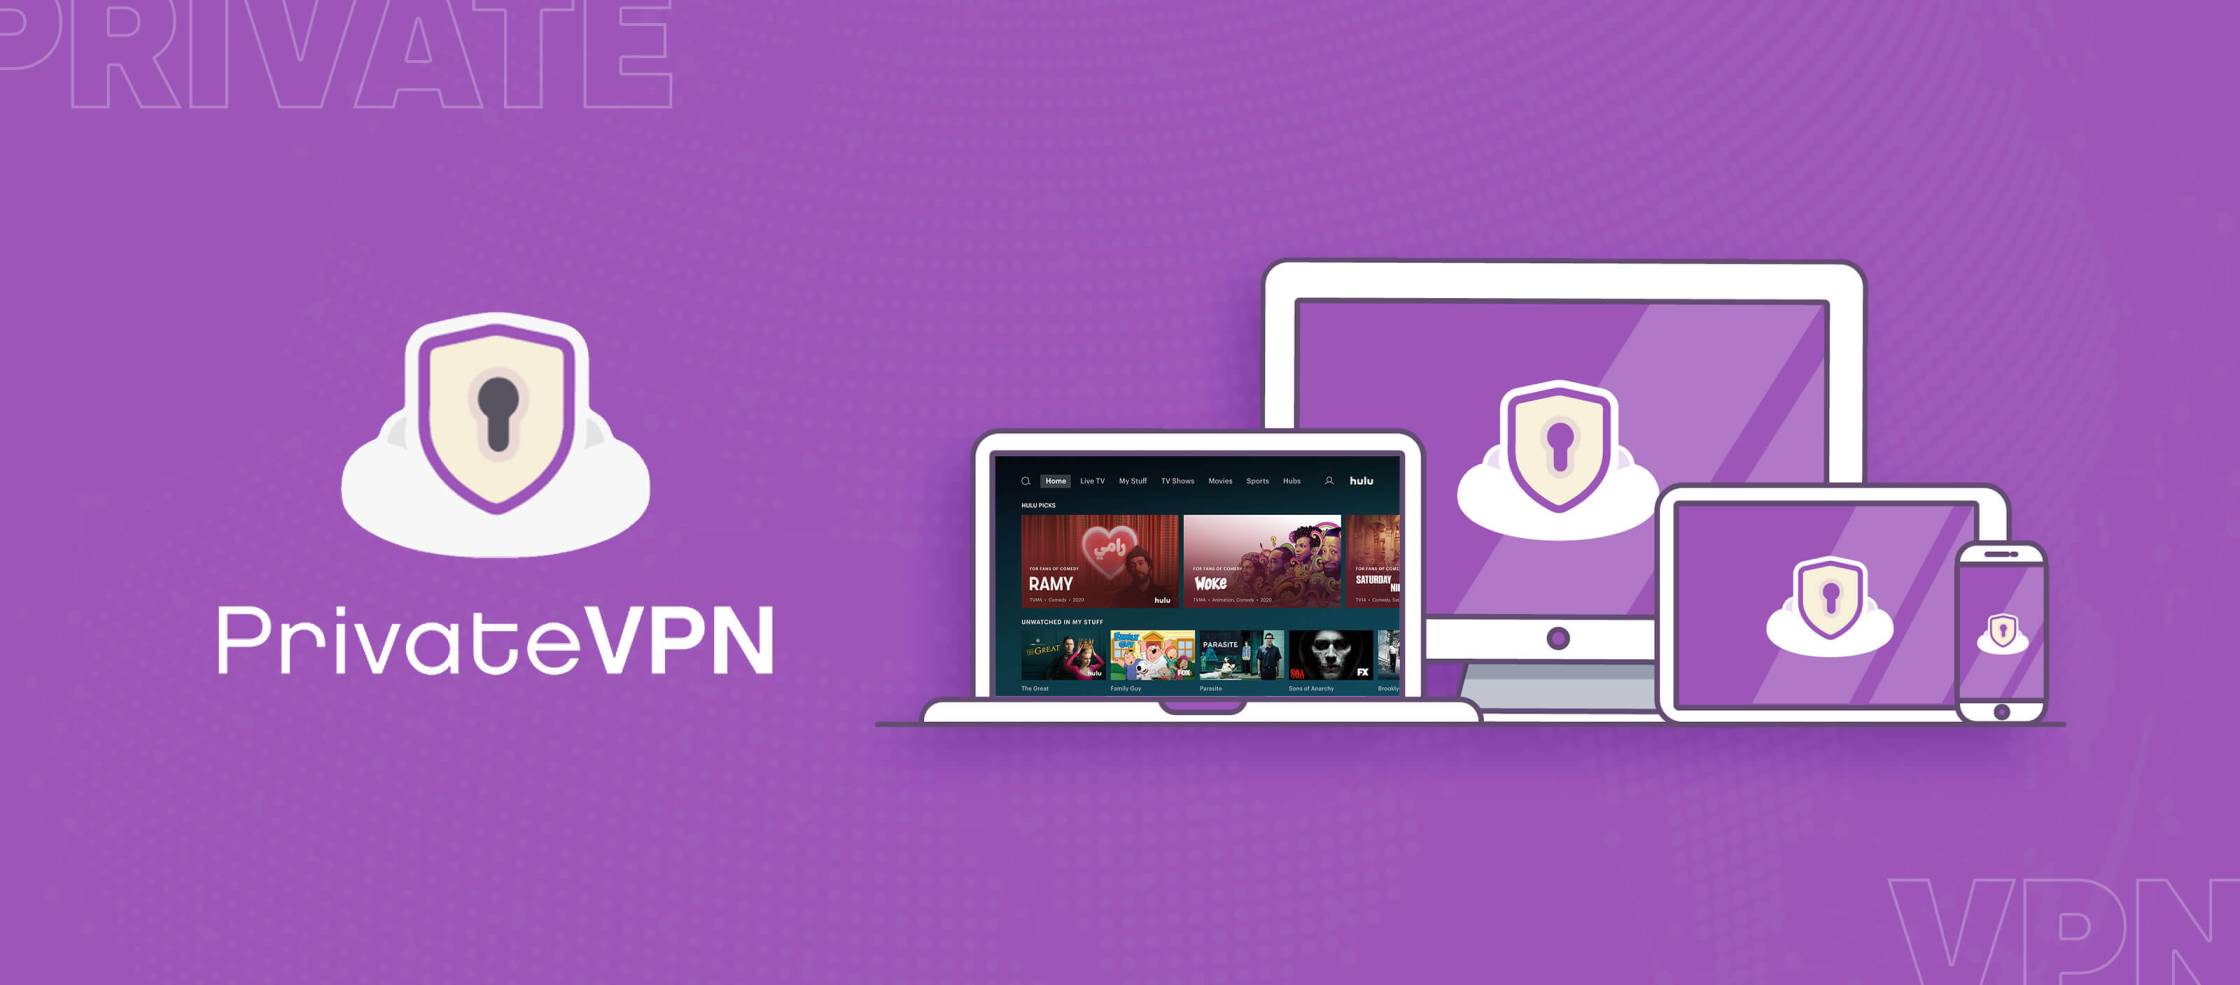 PrivateVPN-Hulu PrivateVPN-Hulu est un service de réseau privé virtuel (VPN) qui permet aux utilisateurs d'accéder au contenu de Hulu depuis n'importe où dans le monde. Avec PrivateVPN-Hulu, les utilisateurs peuvent contourner les restrictions géographiques et profiter de leurs émissions et films préférés sur Hulu en toute confidentialité et sécurité. 